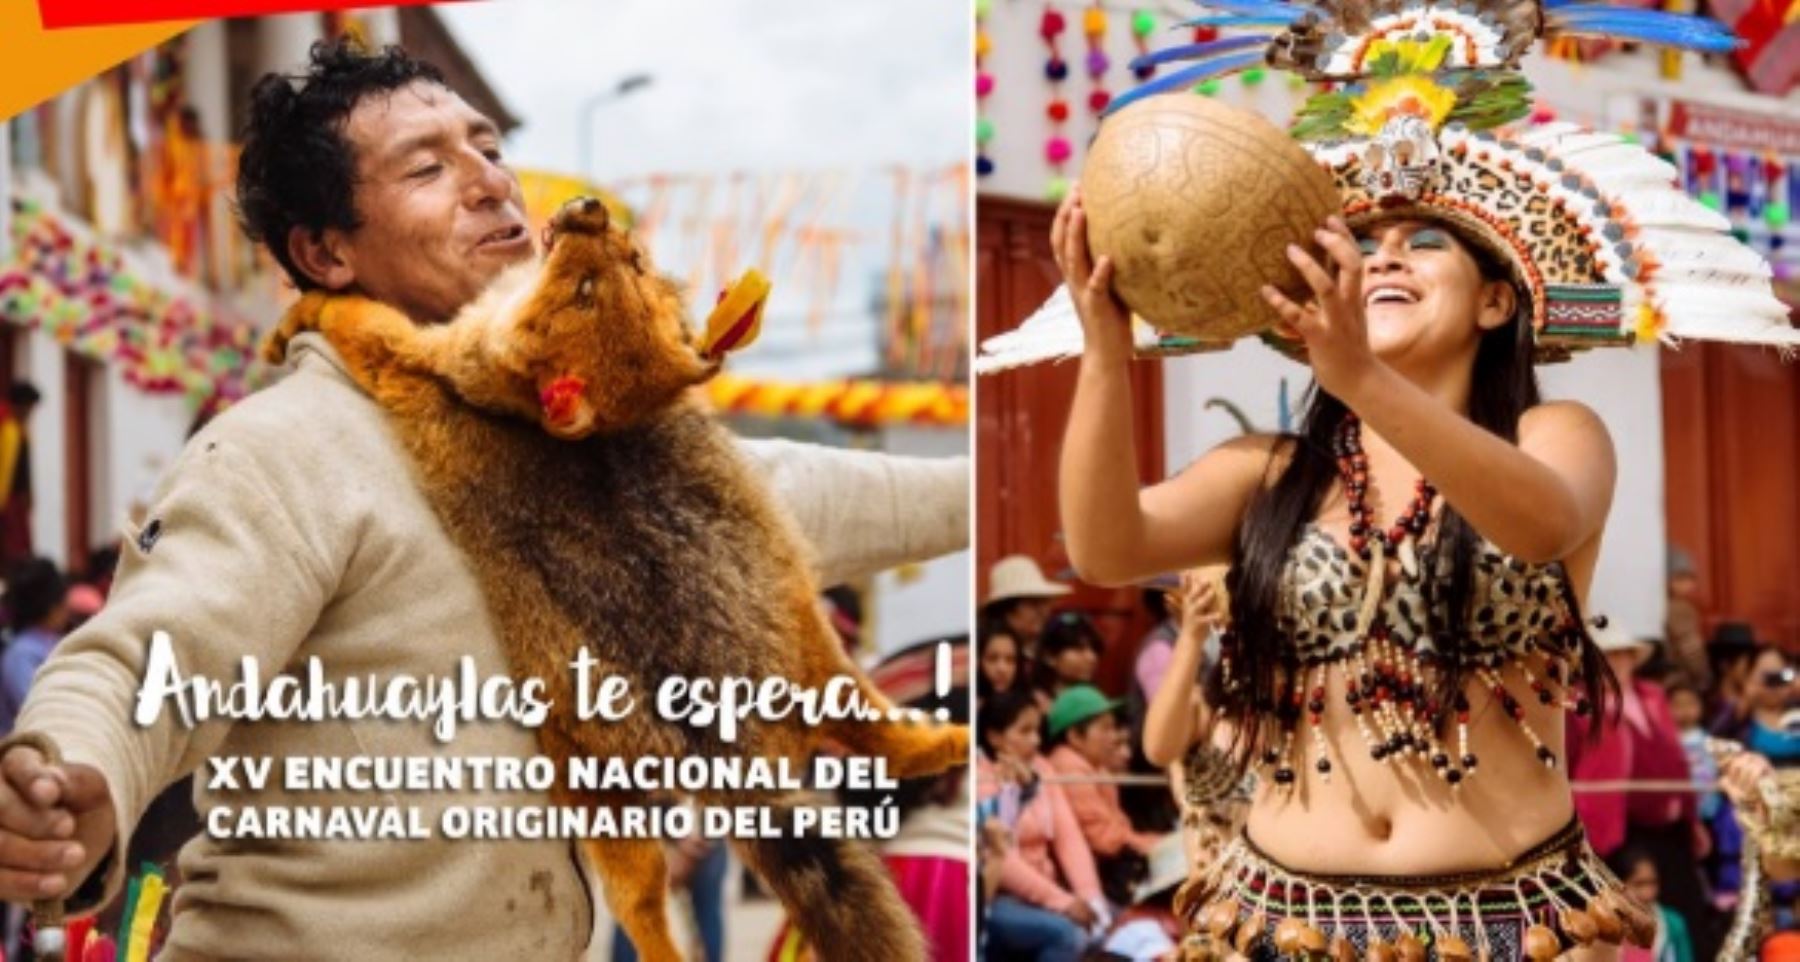 La ciudad de Andahuaylas espera a más de 20,000 turistas, entre nacionales y extranjeros, durante las celebraciones del colorido y alegre Carnaval de Pukllay 2017, a realizarse del 15 al 18 de marzo.